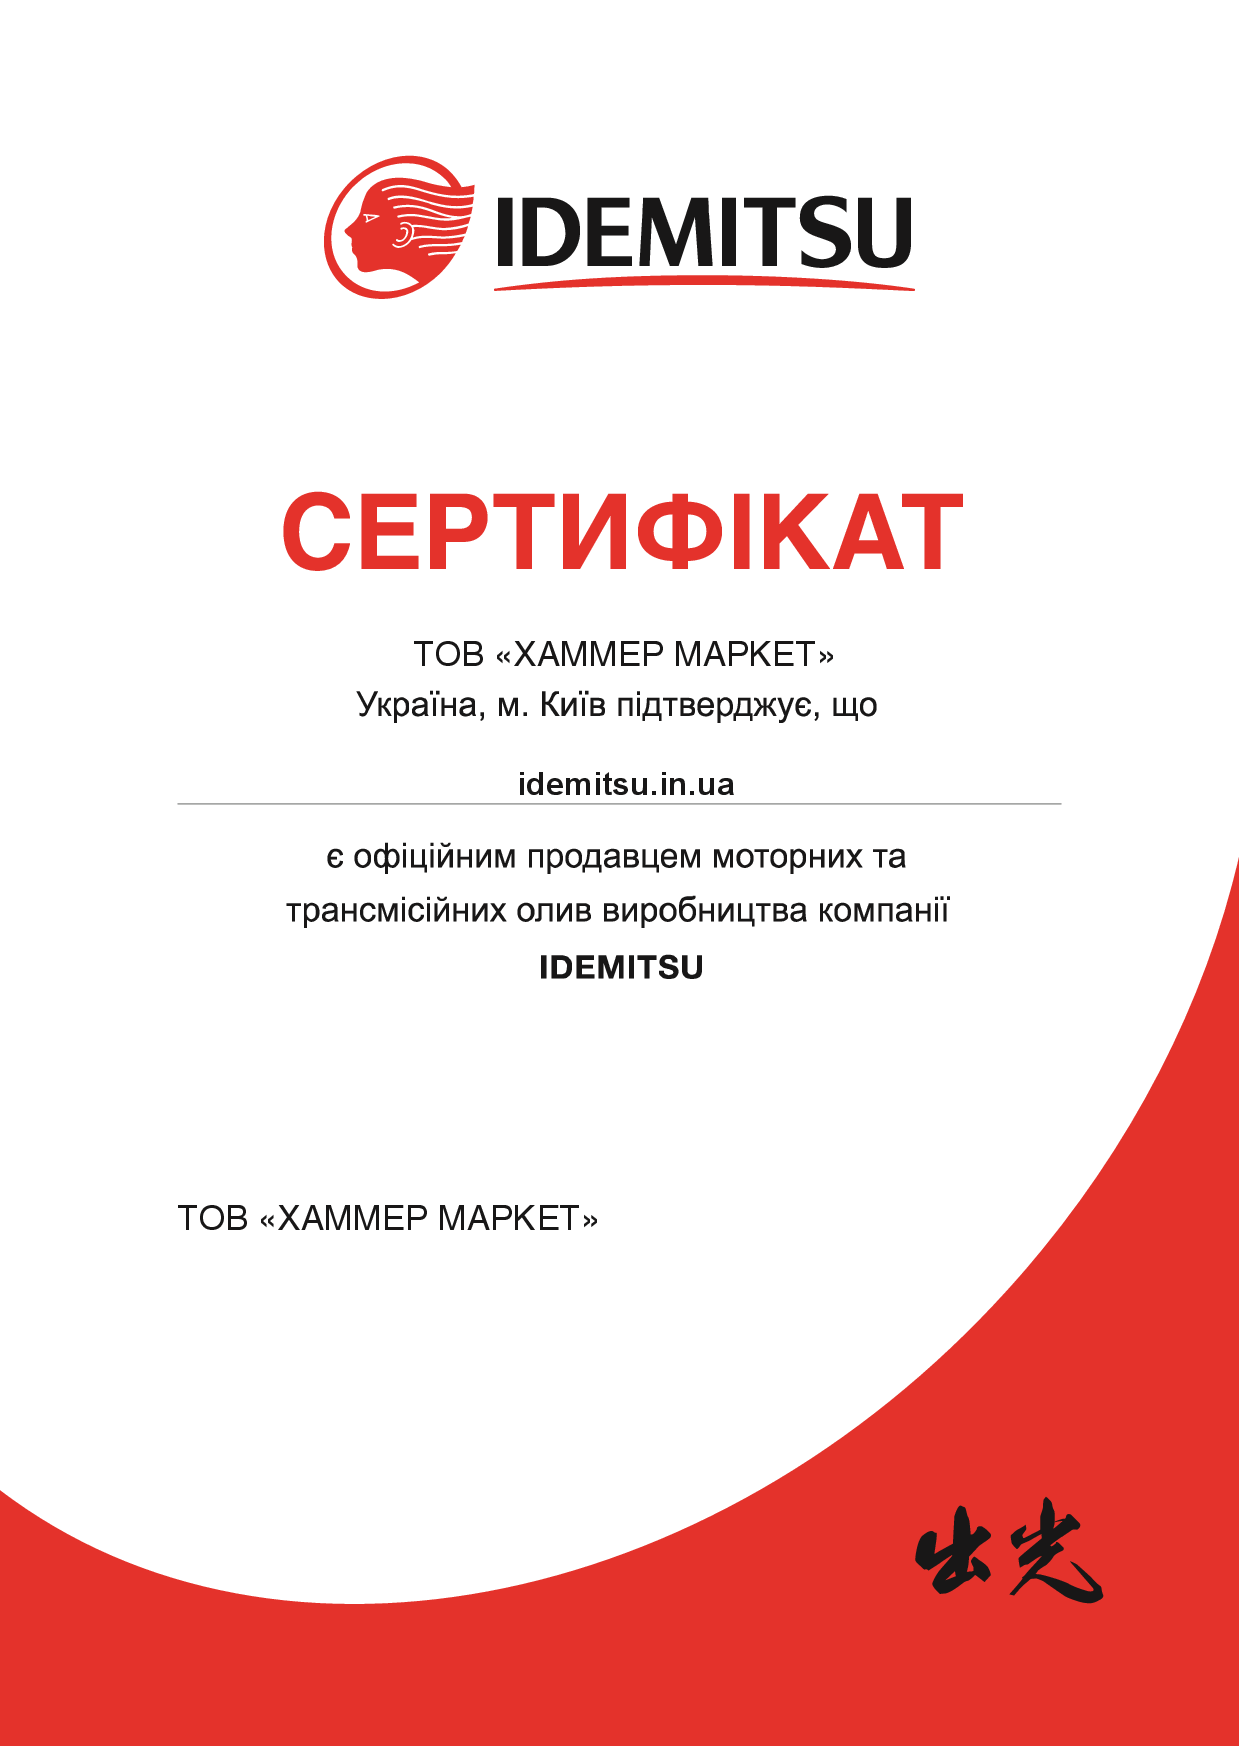 Сертифікат офіційного продавця Idemitsu